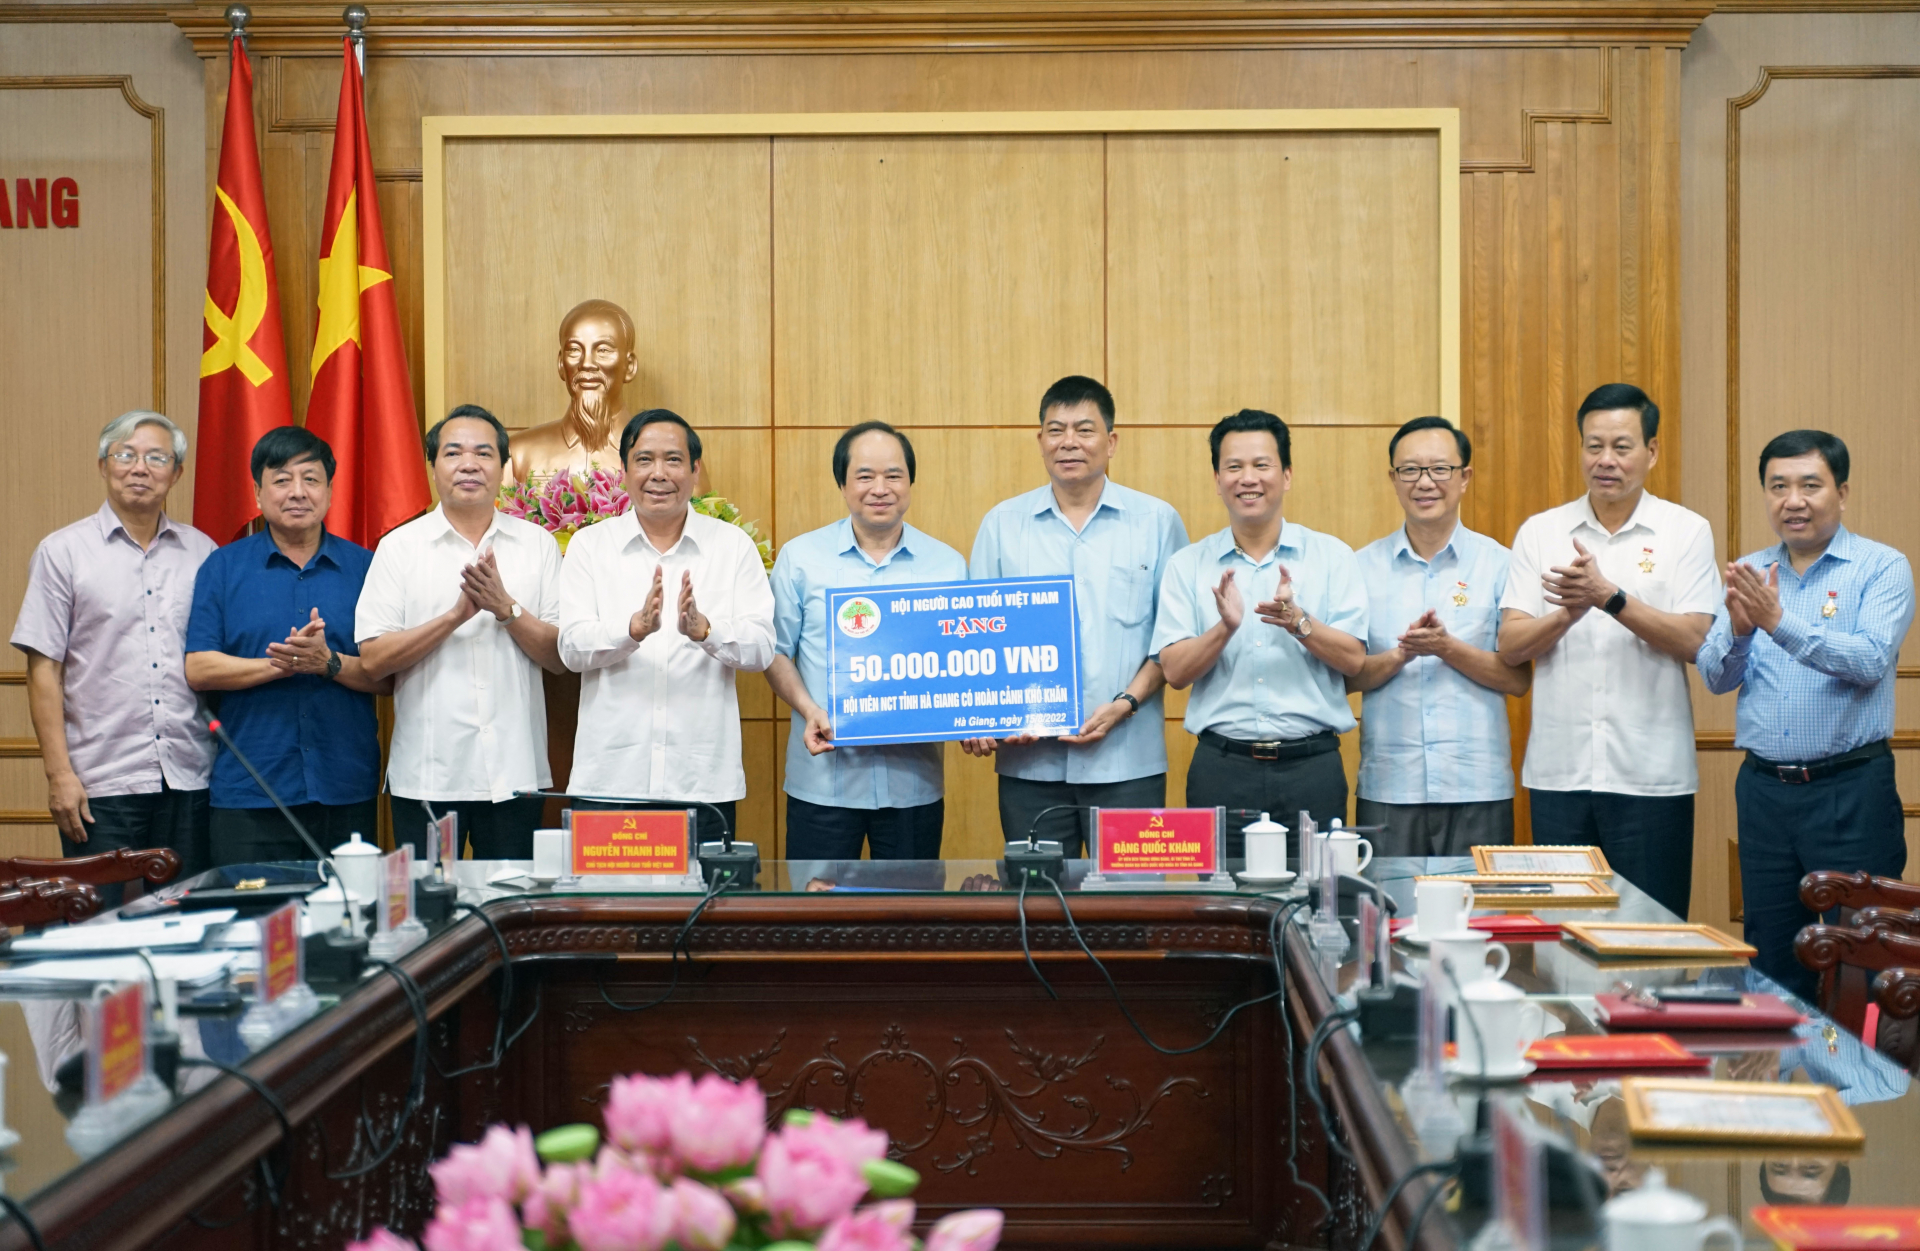 Các đồng chí lãnh đạo tỉnh tiếp nhận 50 triệu đồng của Hội NCT Việt Nam cho hội viên NCT tỉnh Hà Giang có hoàn cảnh khó khăn.